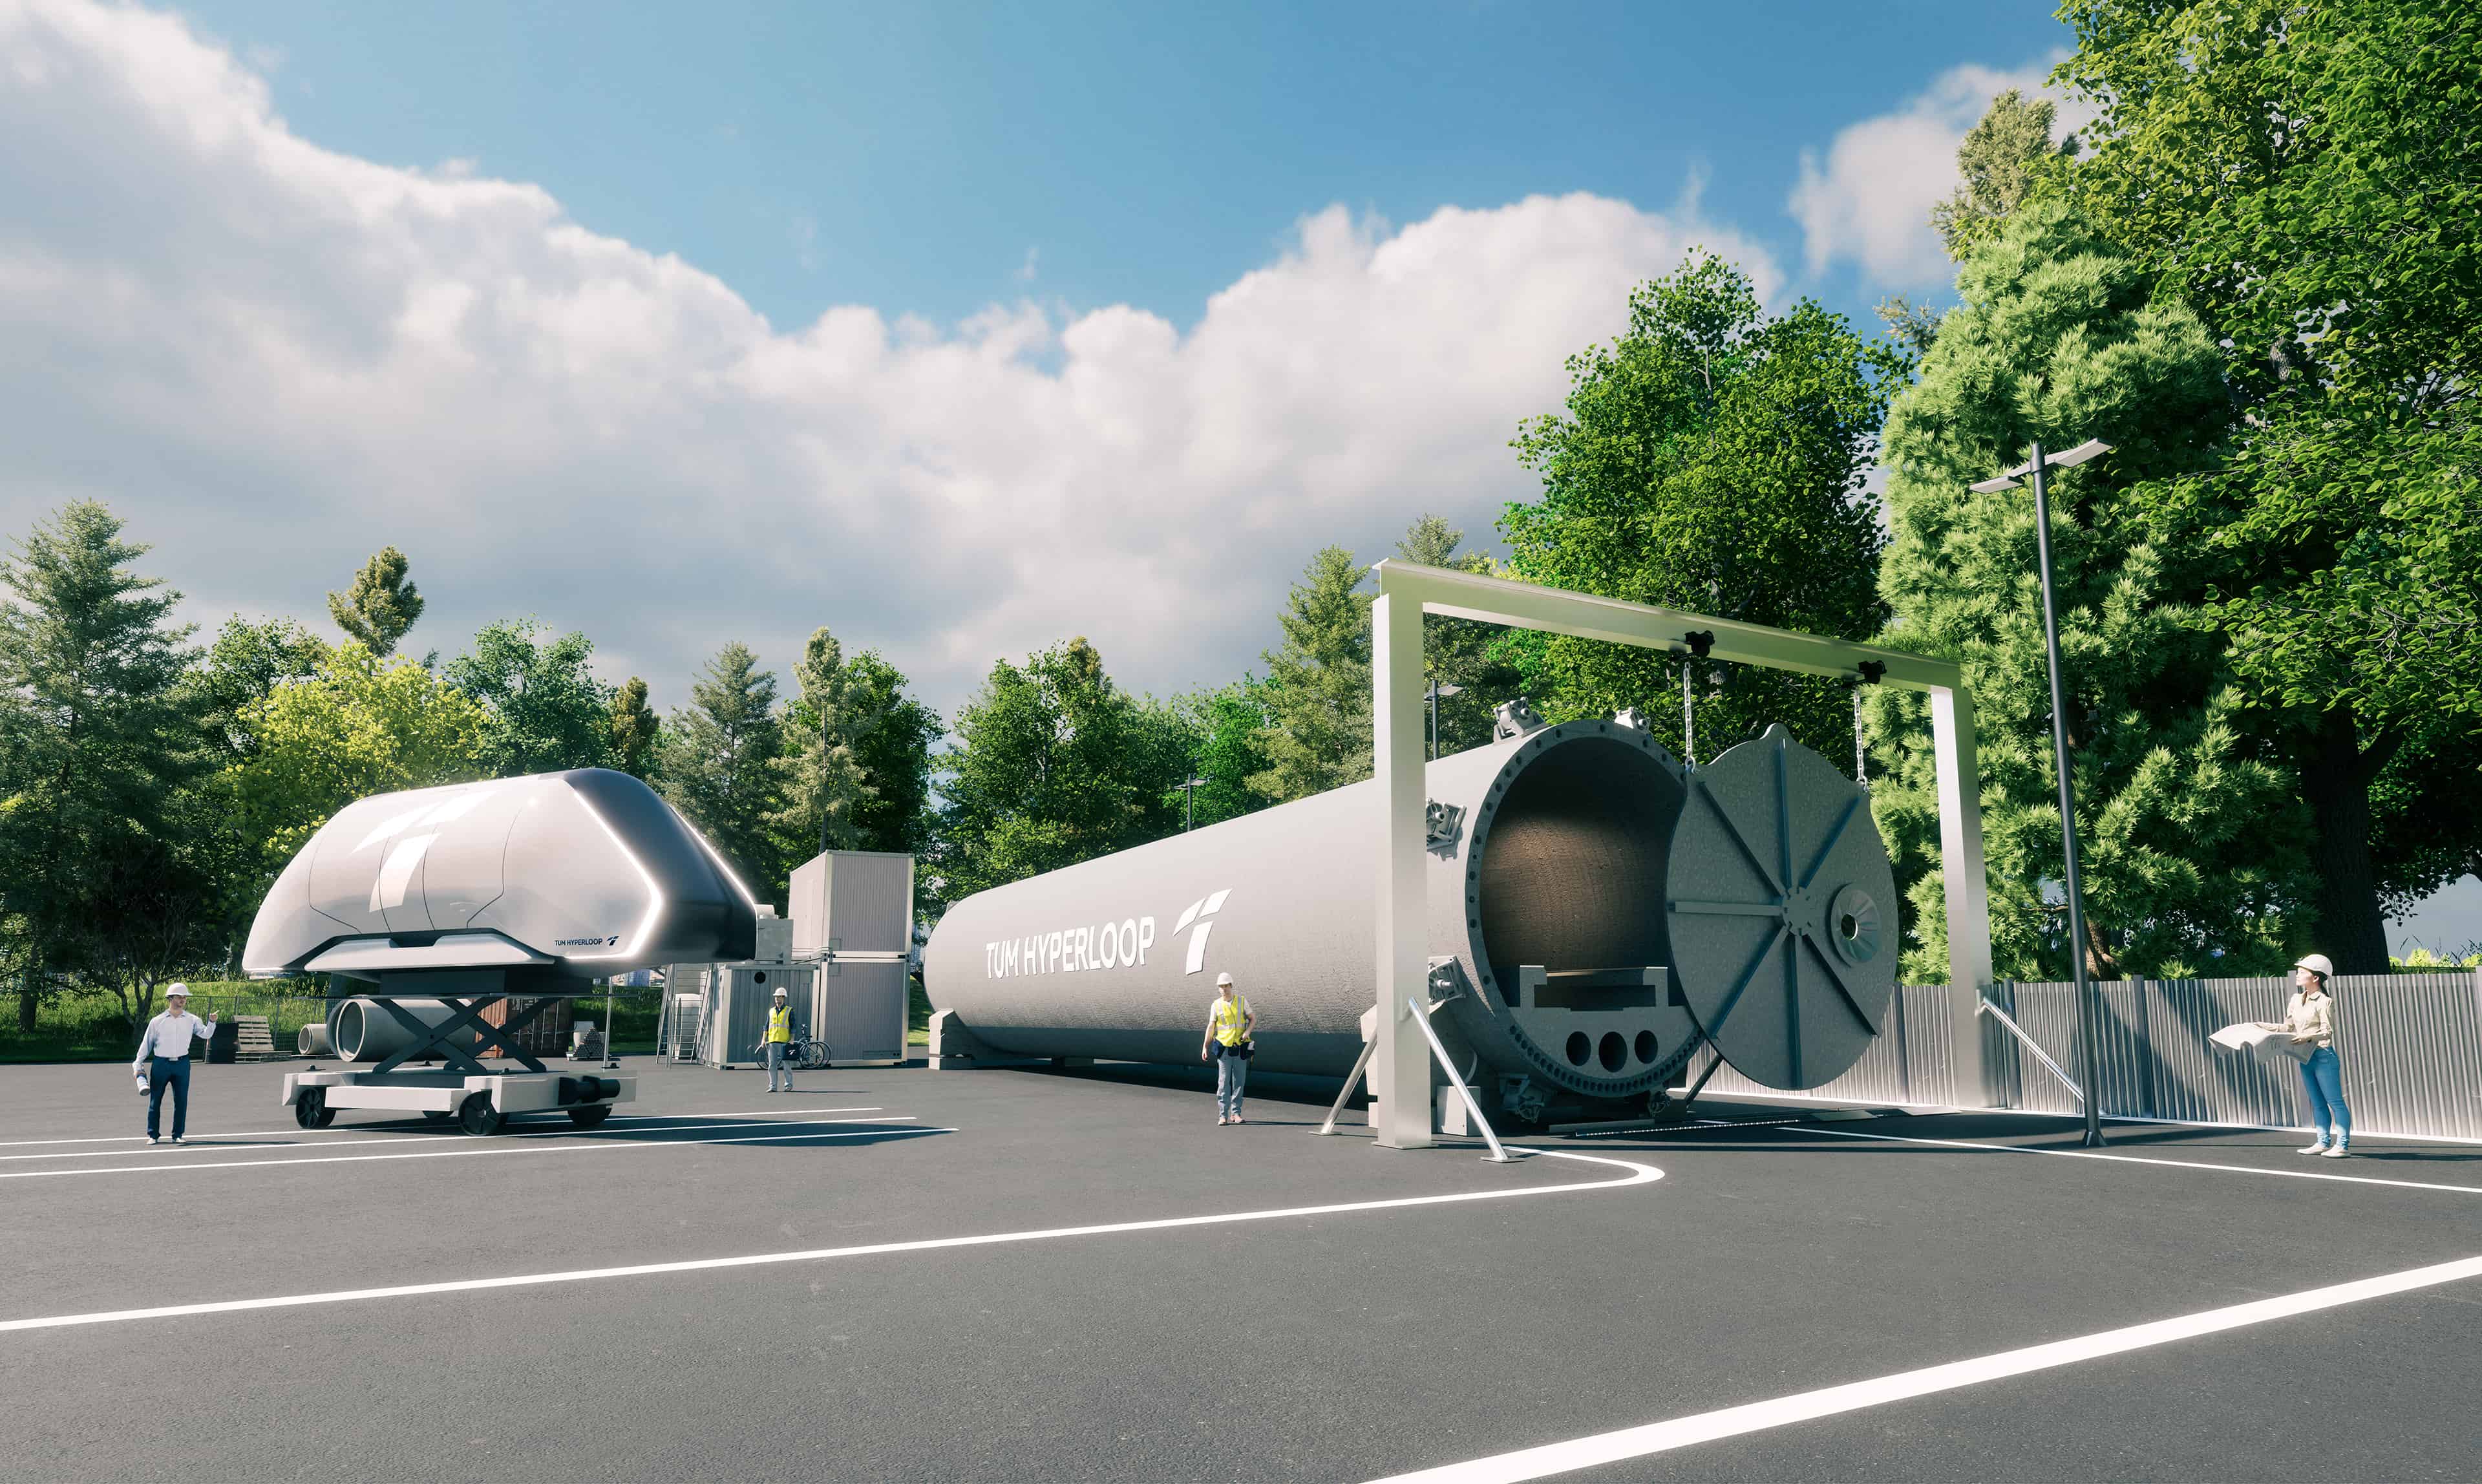 Tunneltitanen: TUM Boring wint opnieuw in Elon Musks hyperloop wedstrijd